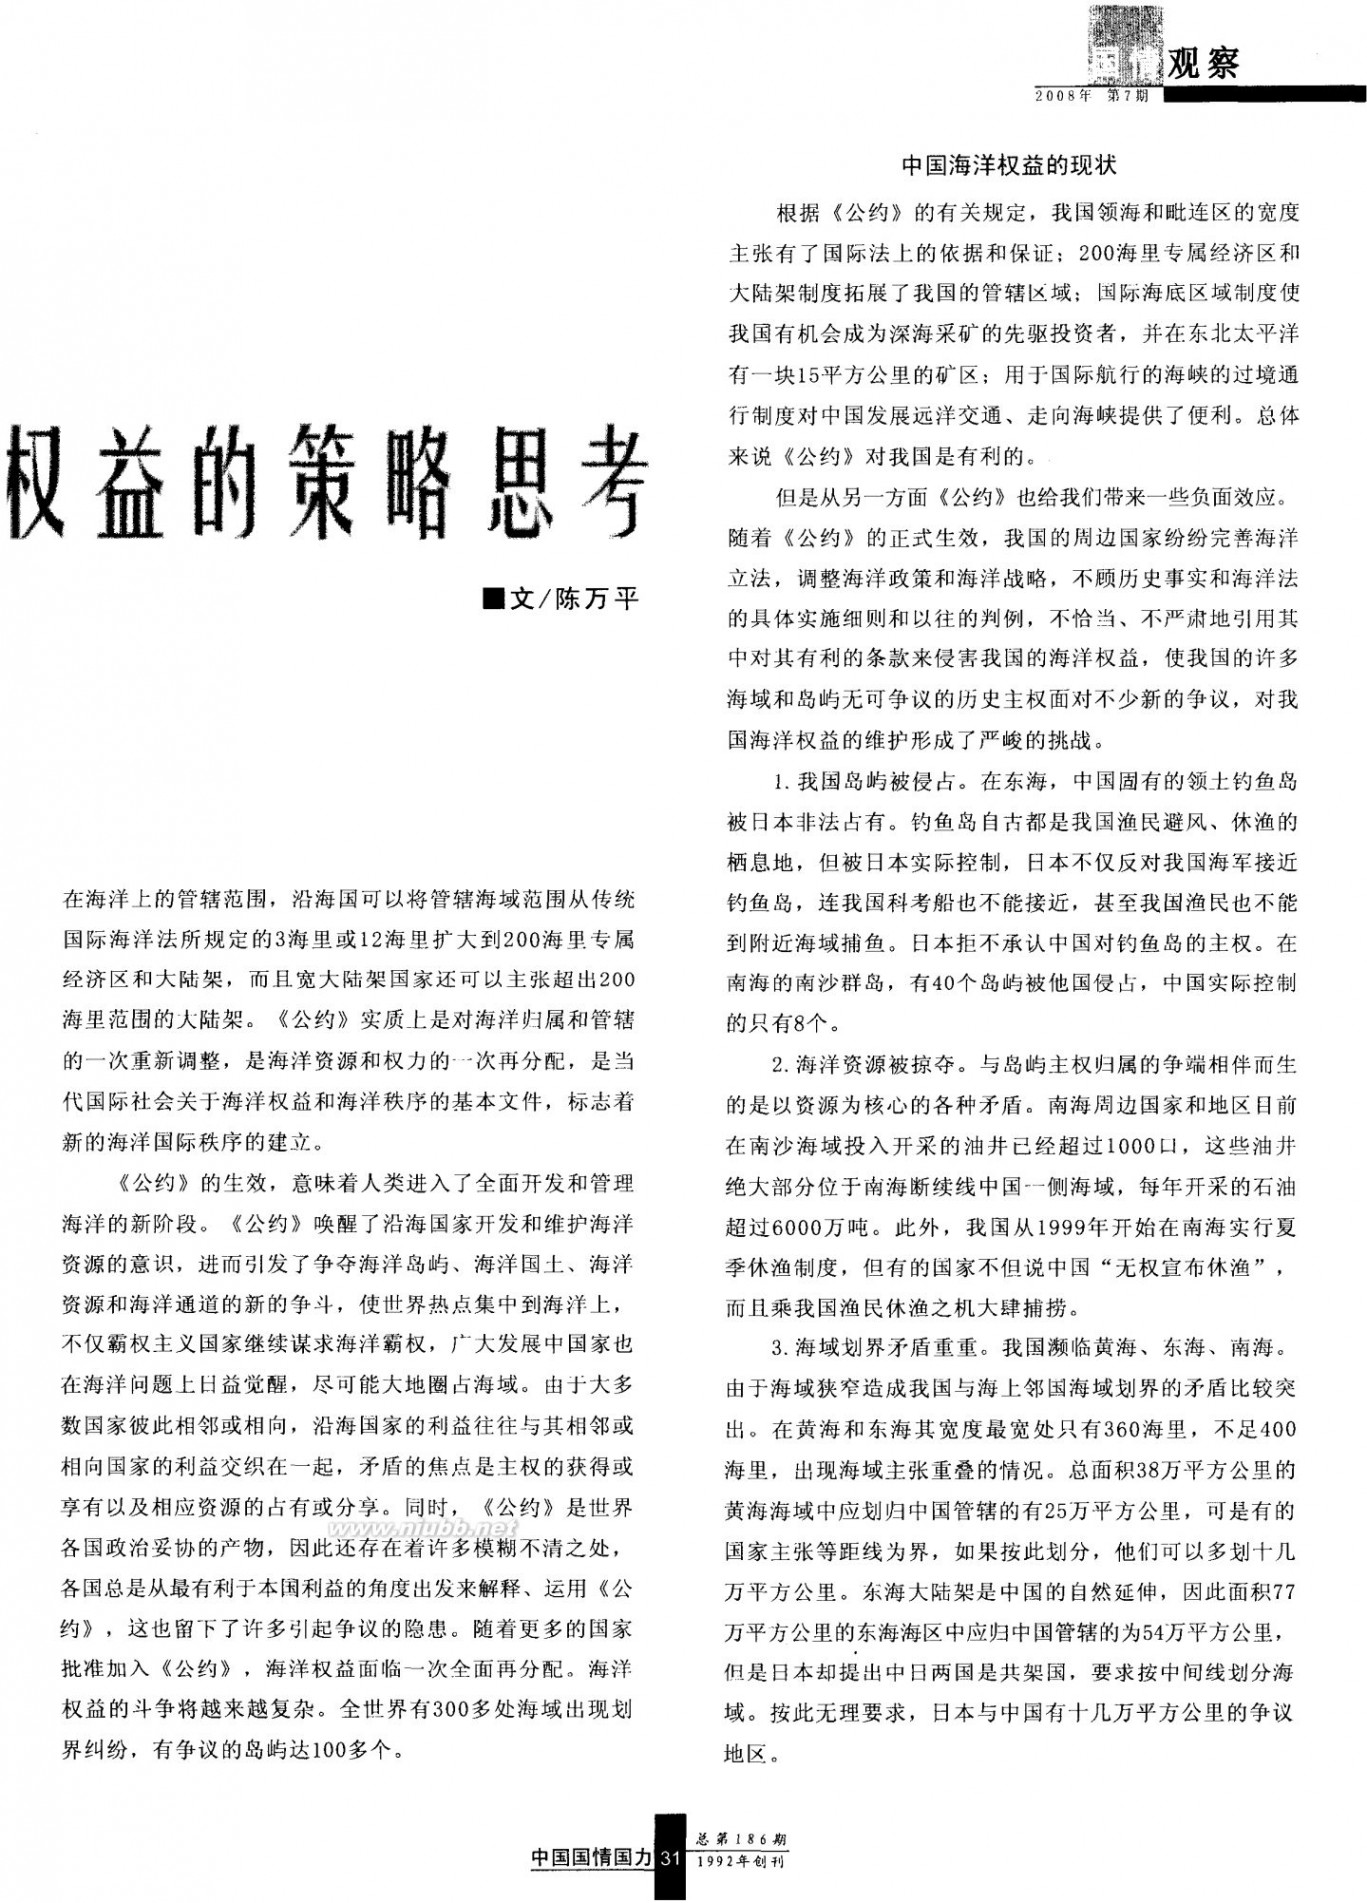 中国国情国力 维护我国海洋权益的策略思考《中国国情国力》 2008年第7期